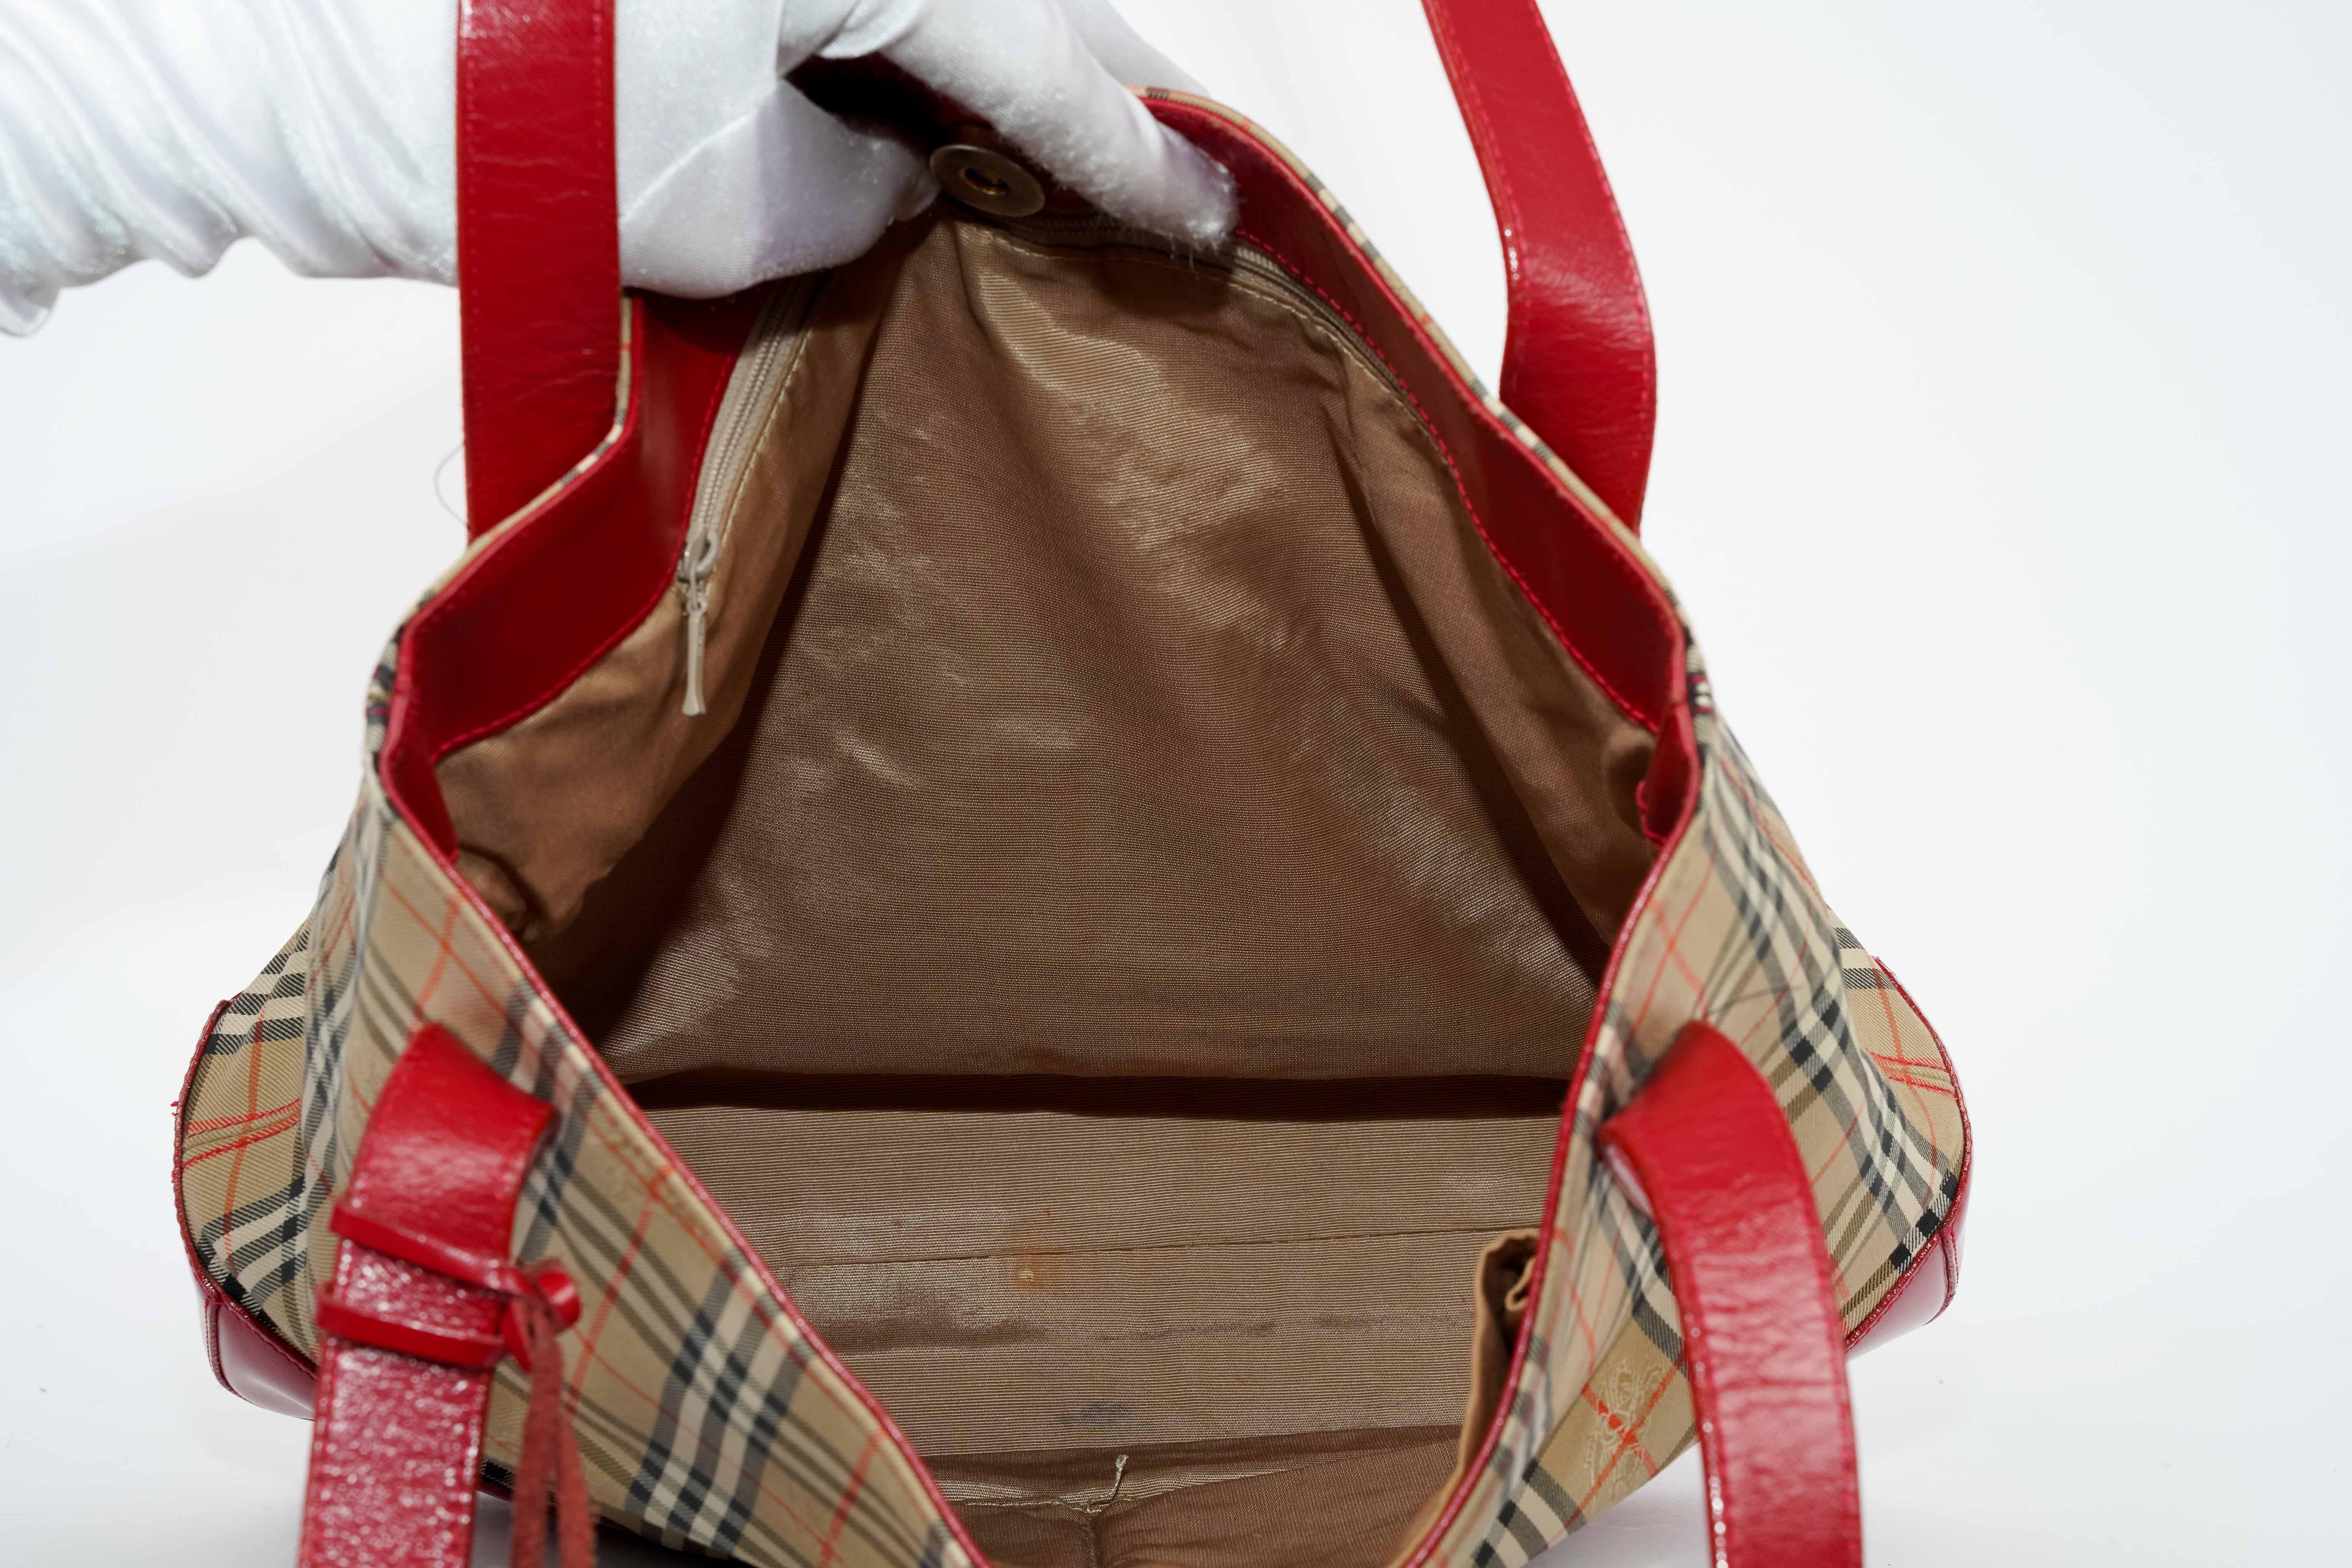 Monogram Red Leather Shoulder Bag - Volver